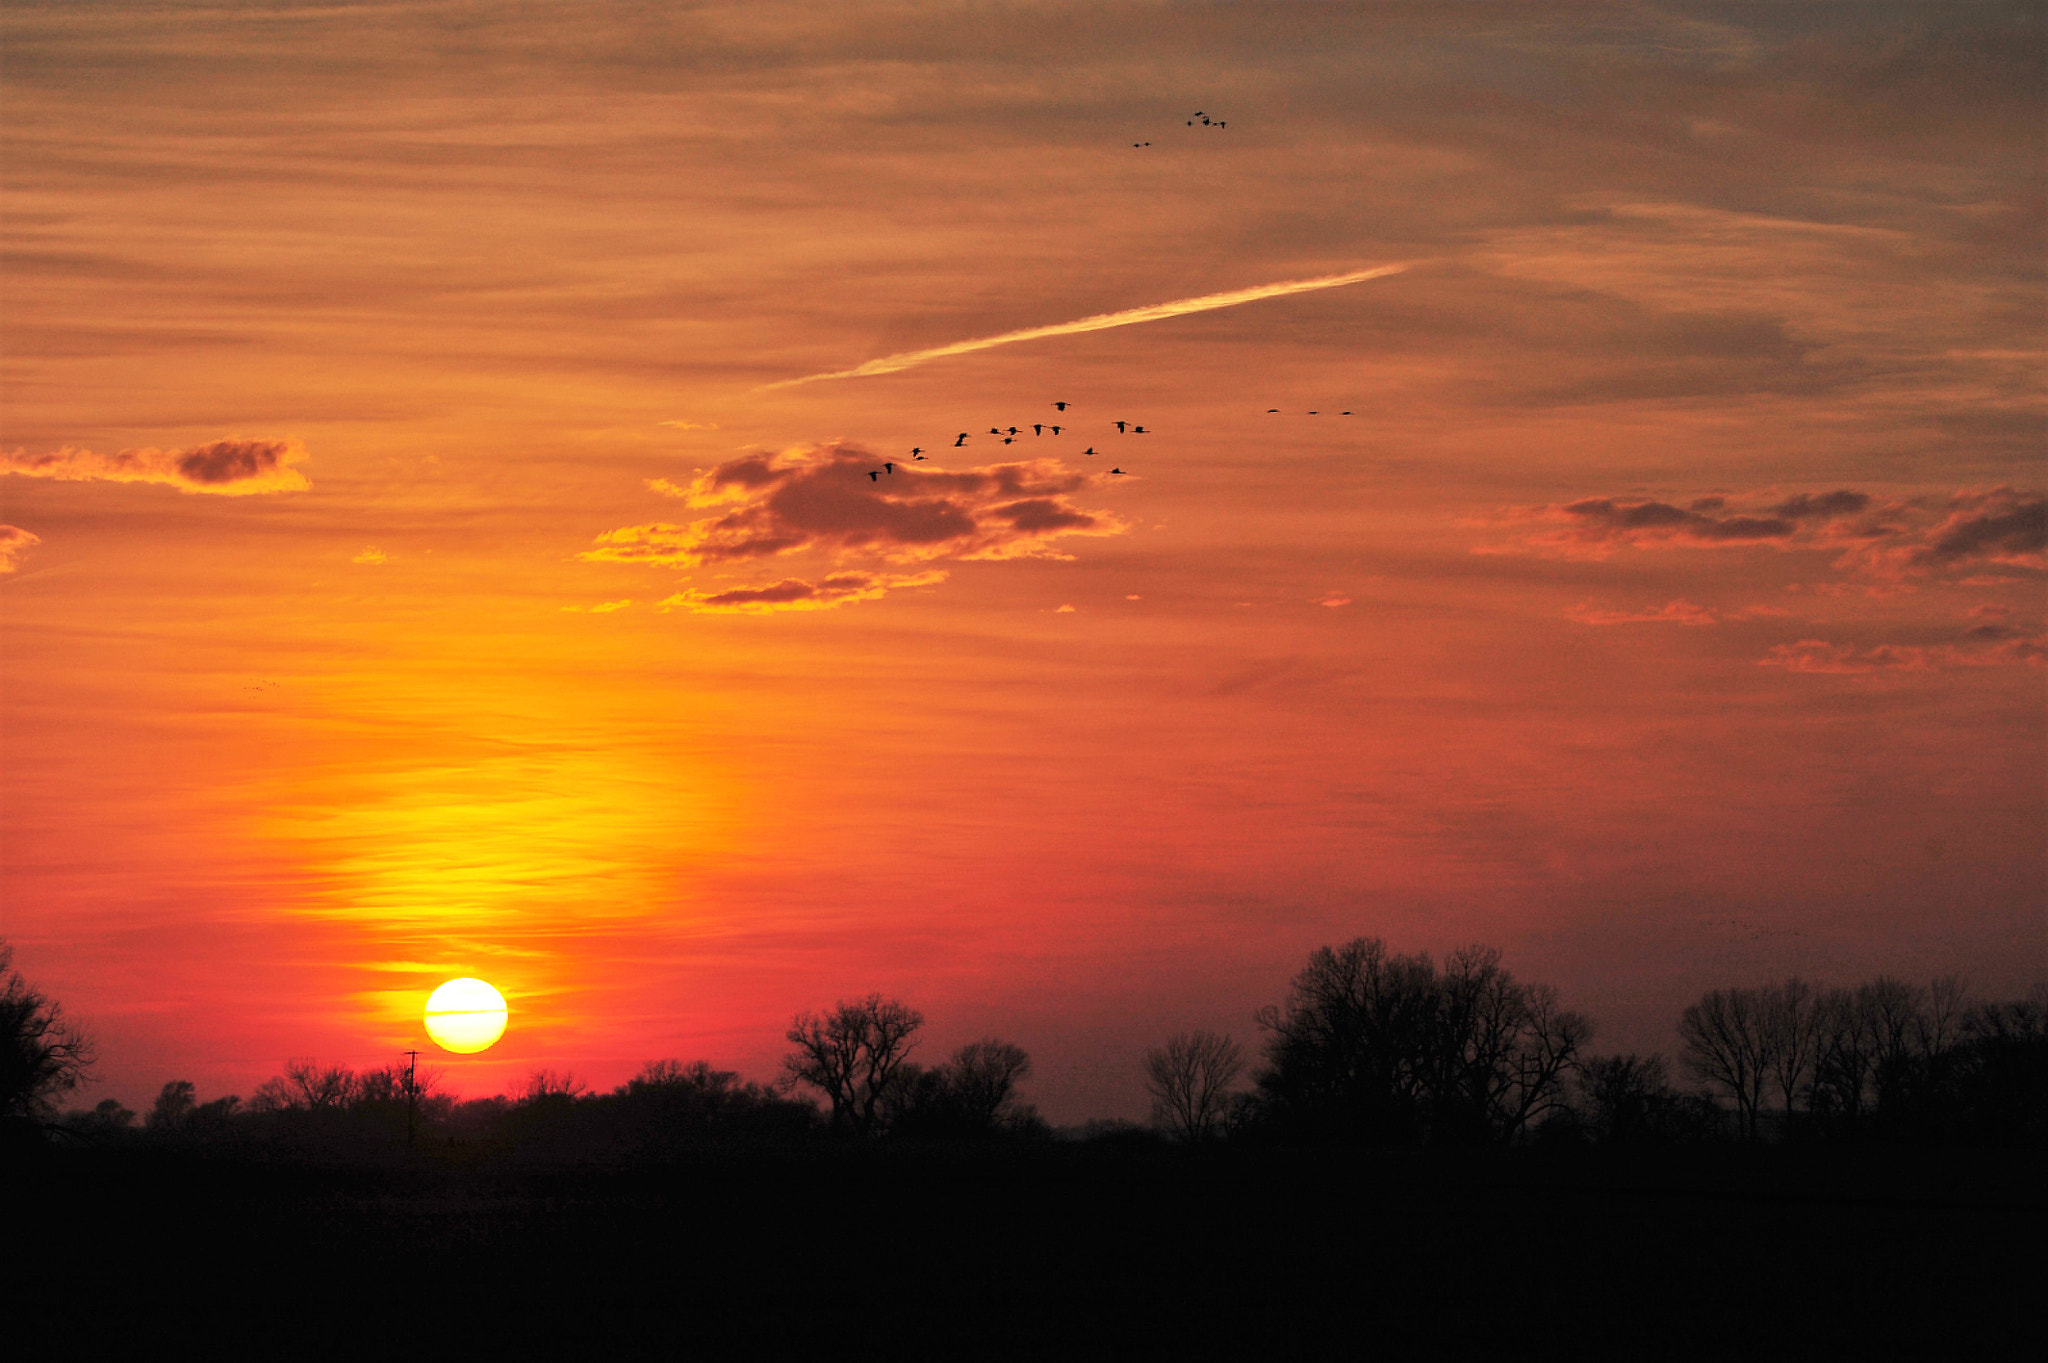 Nikon D700 sample photo. South central nebraska sunset photography